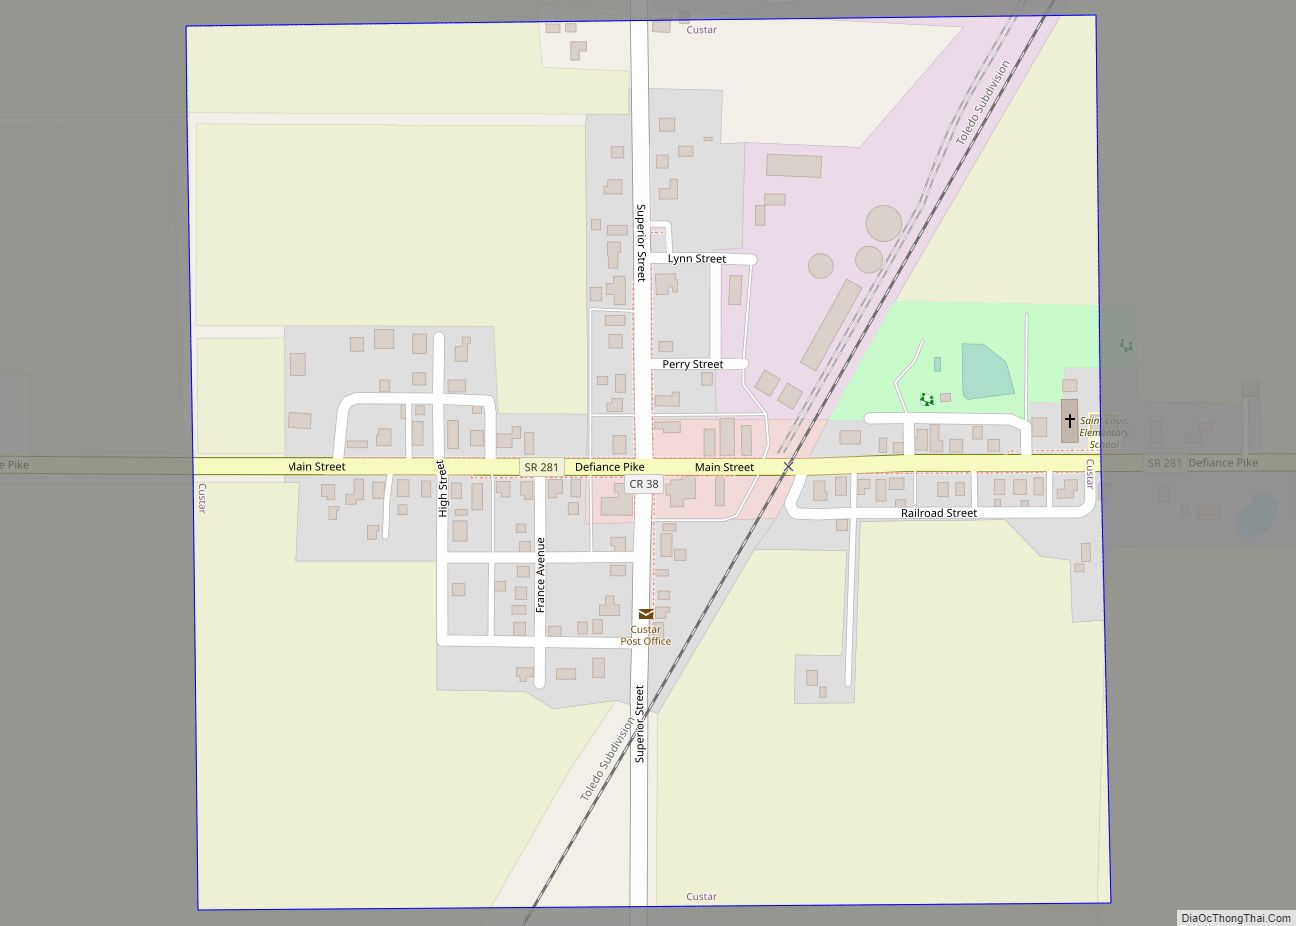 Map of Custar village